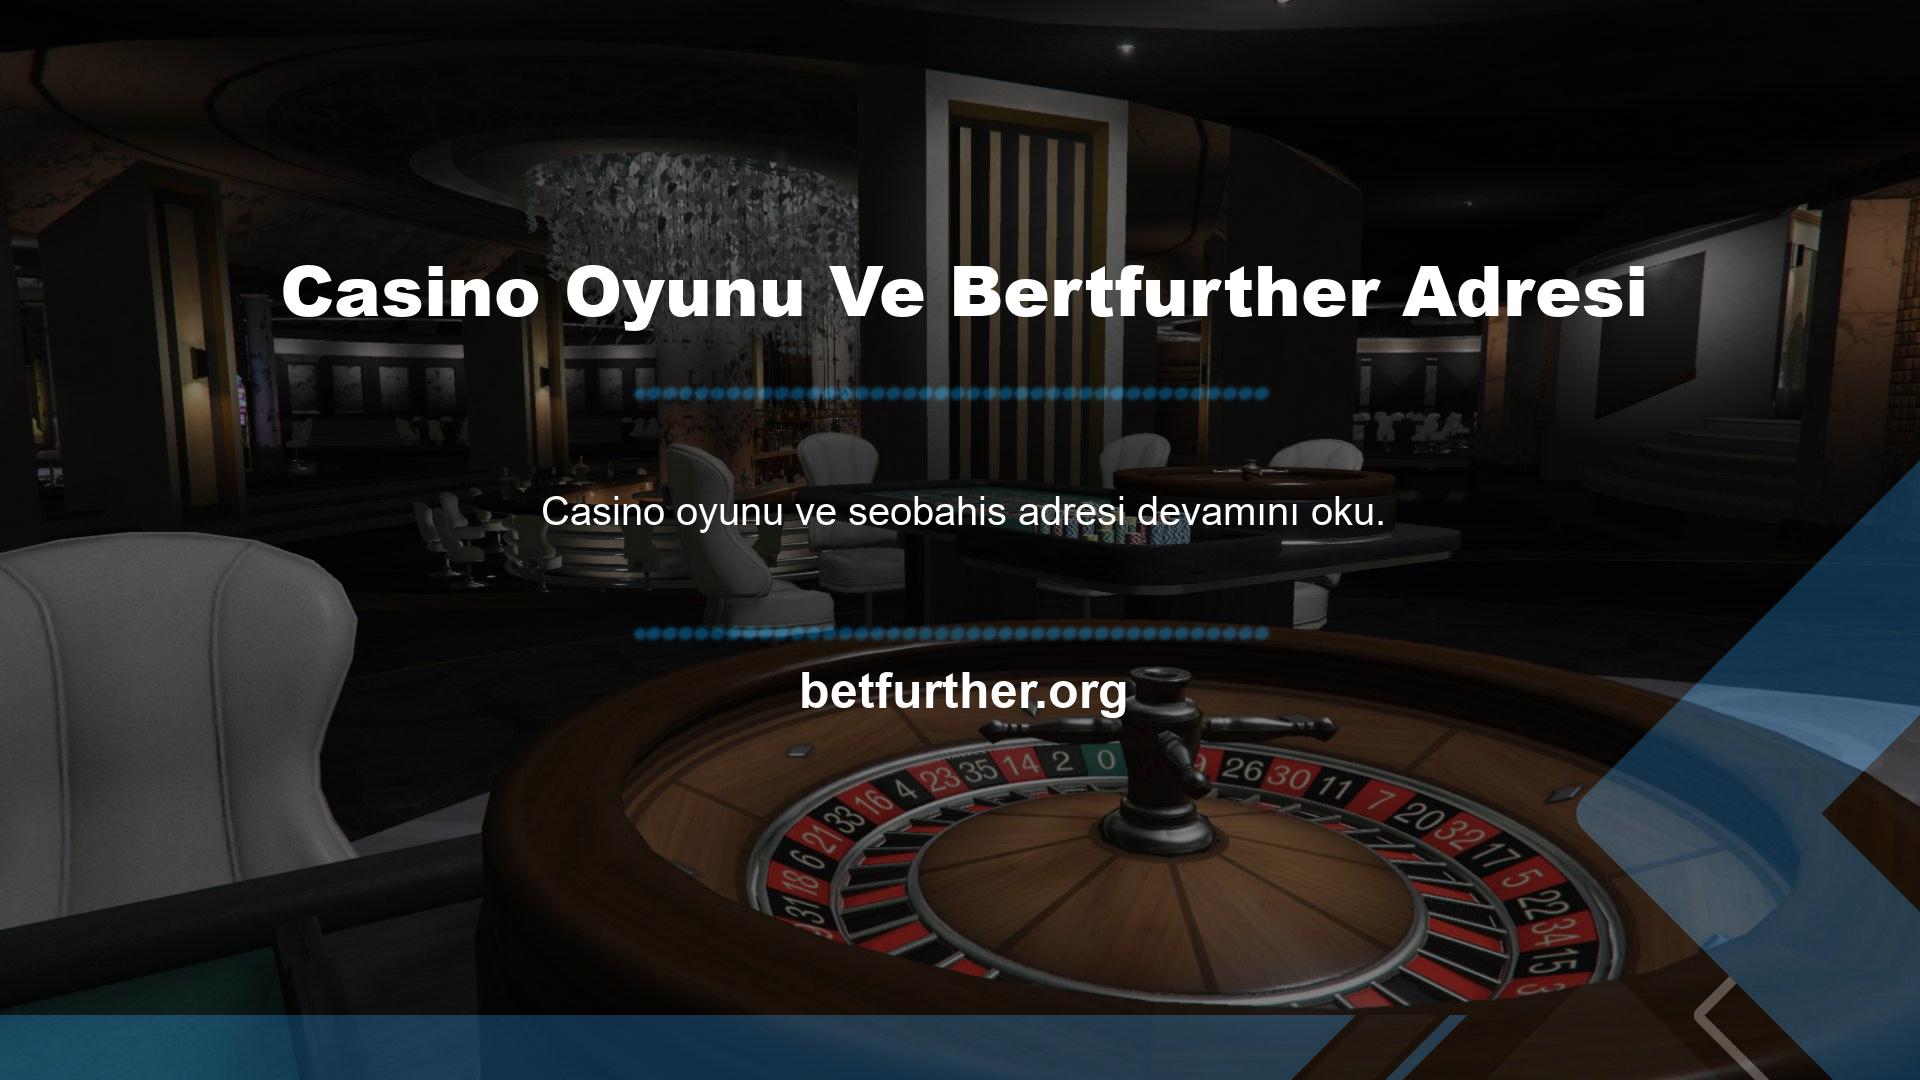 En güvenilir casino oyunlarını seçmek söz konusu olduğunda, Bertfurther giriş adresi sorunlu olabileceğinden öncelikle saygın yazılım sağlayıcılarından bir oyun seçmelisiniz